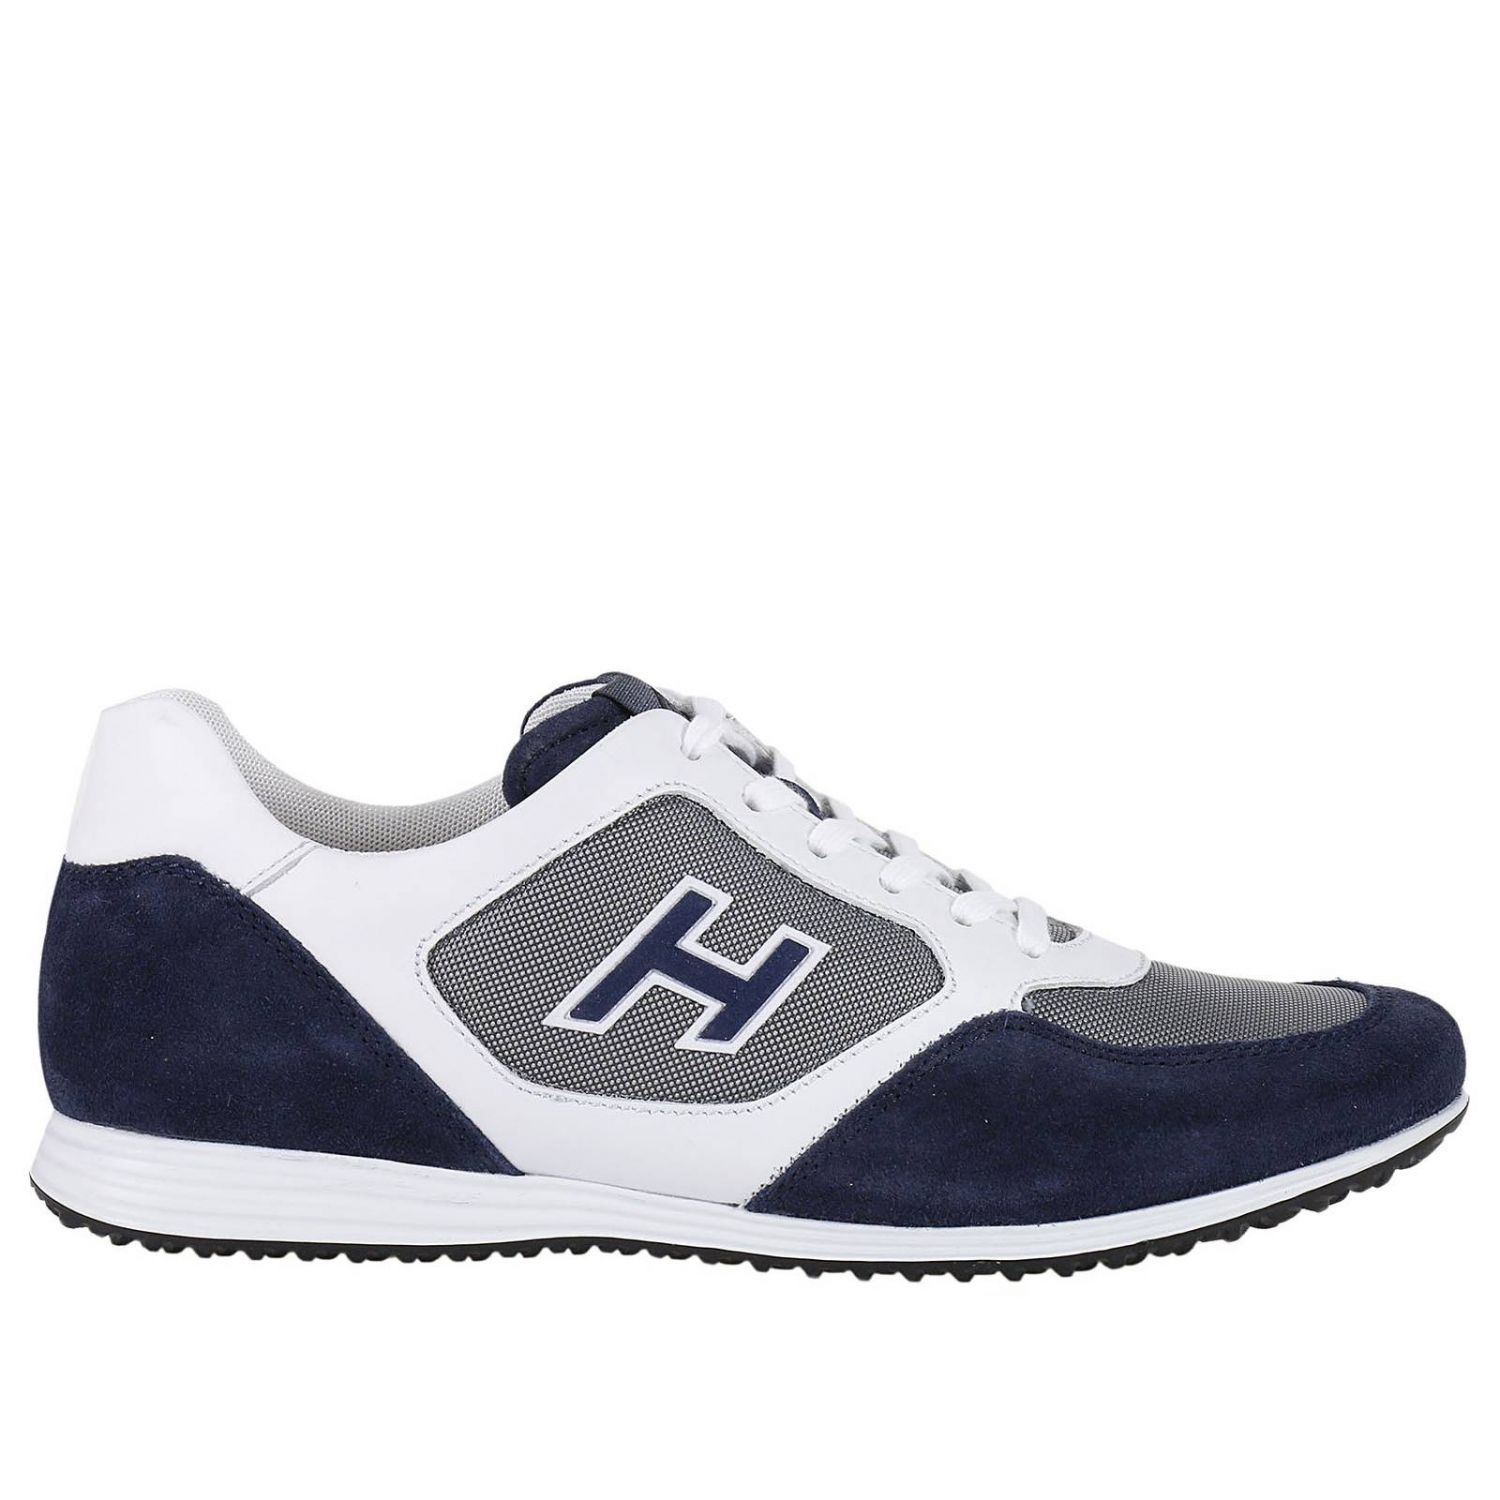 Scarpe uomo Hogan | Sneakers Hogan Uomo Blue | Sneakers Hogan HXM2050U670  E4U Giglio IT